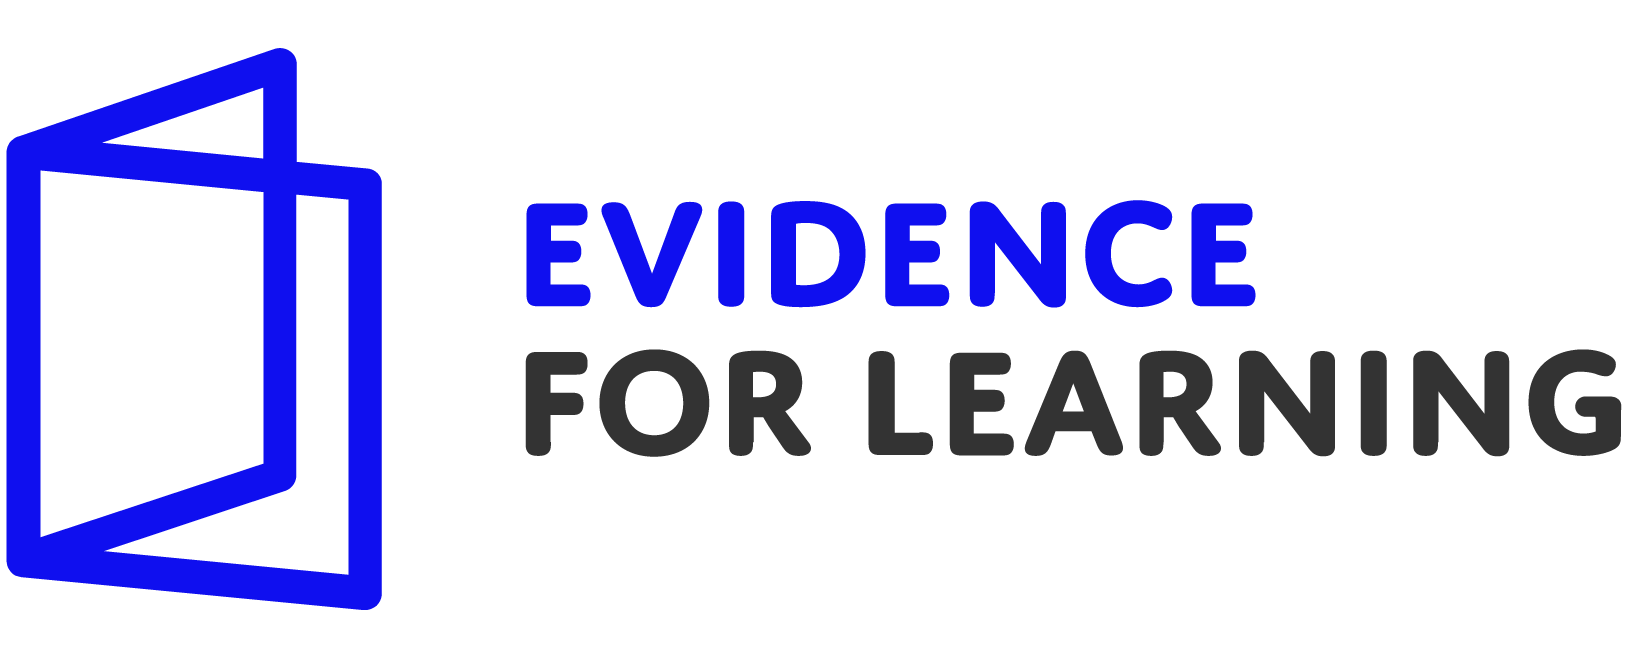 Evidence for Learning logo